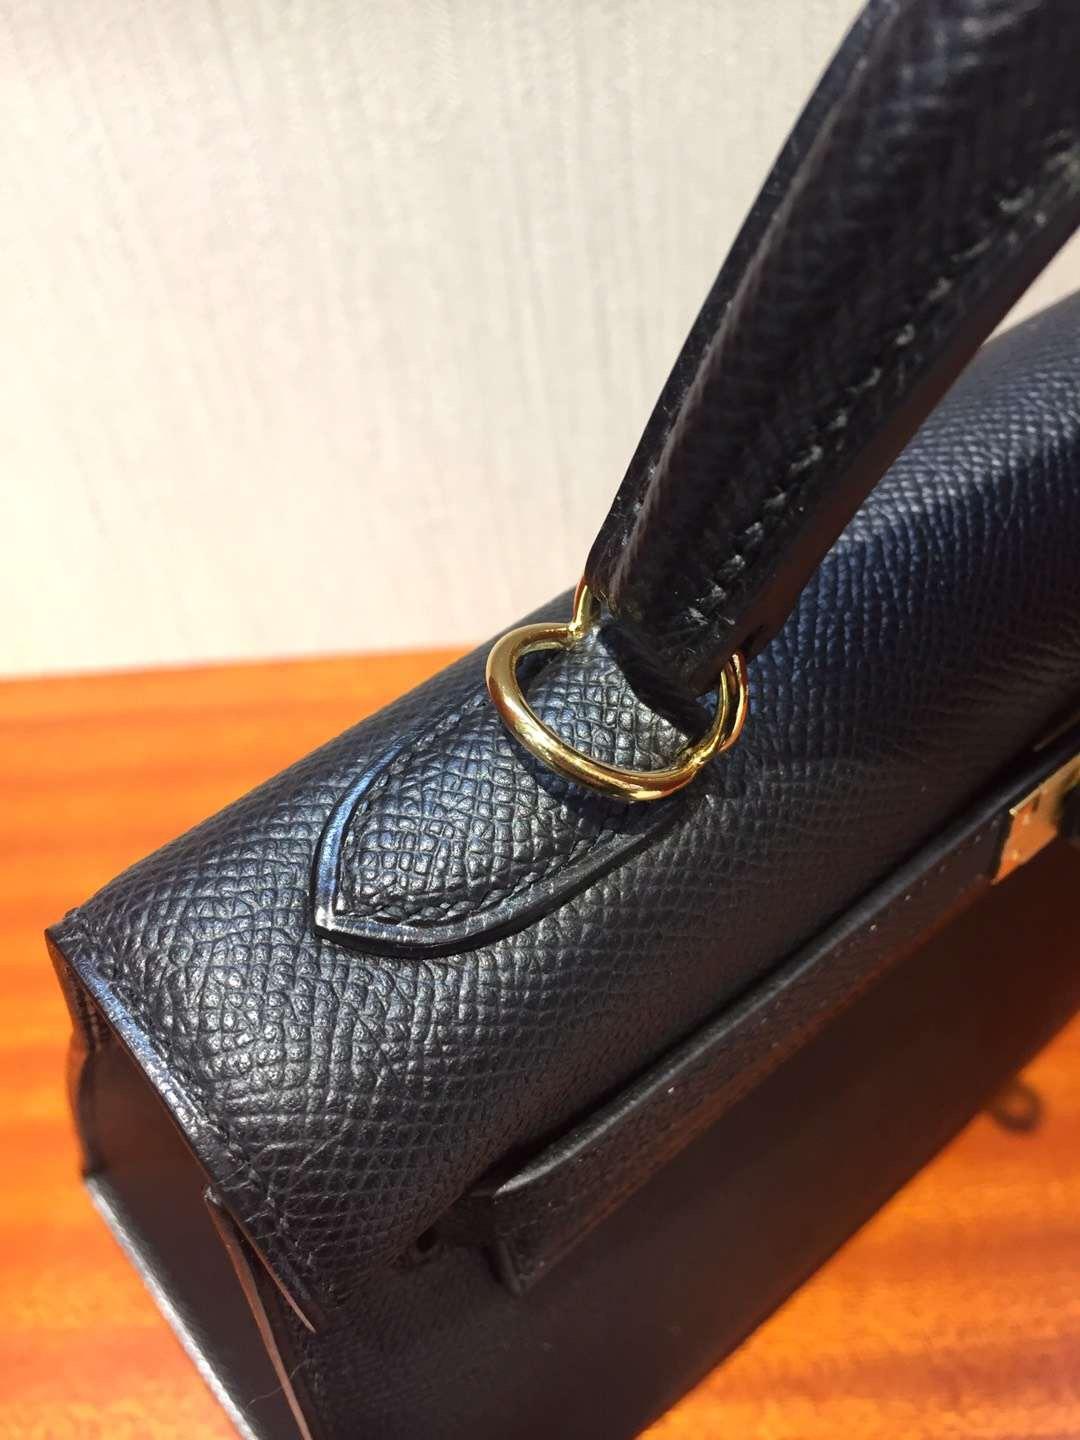 Australia Hermes Kelly bag 25cm CK89黑色 Epsom掌紋牛皮 金扣